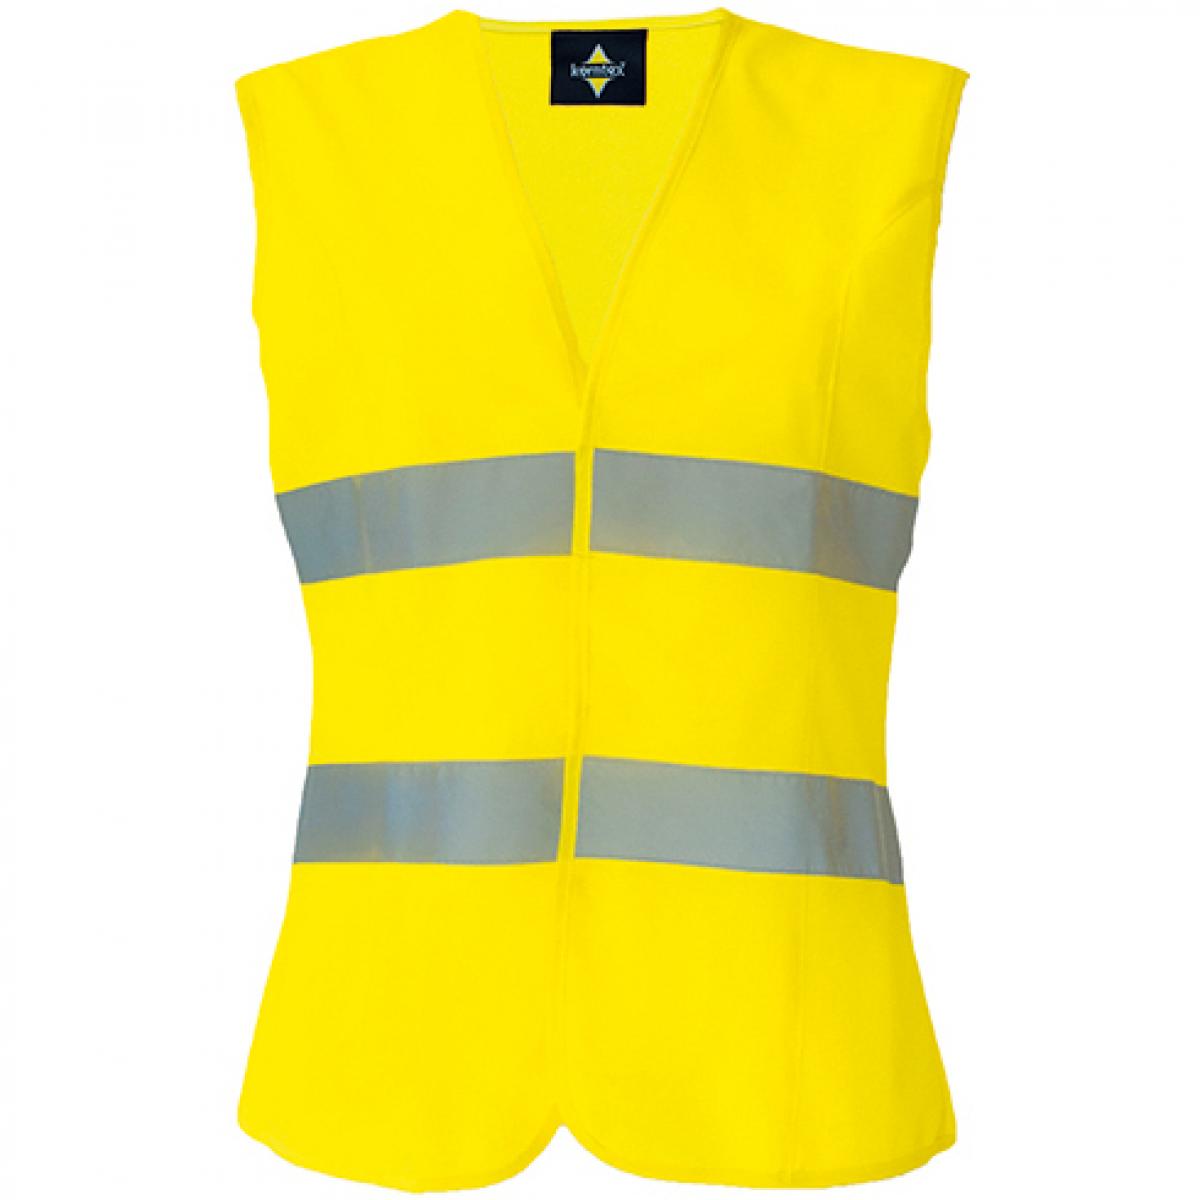 Hersteller: Korntex Herstellernummer: KXF Artikelbezeichnung: Damen Korntex® Sicherheitsweste EN ISO 20471 Farbe: Signal Yellow